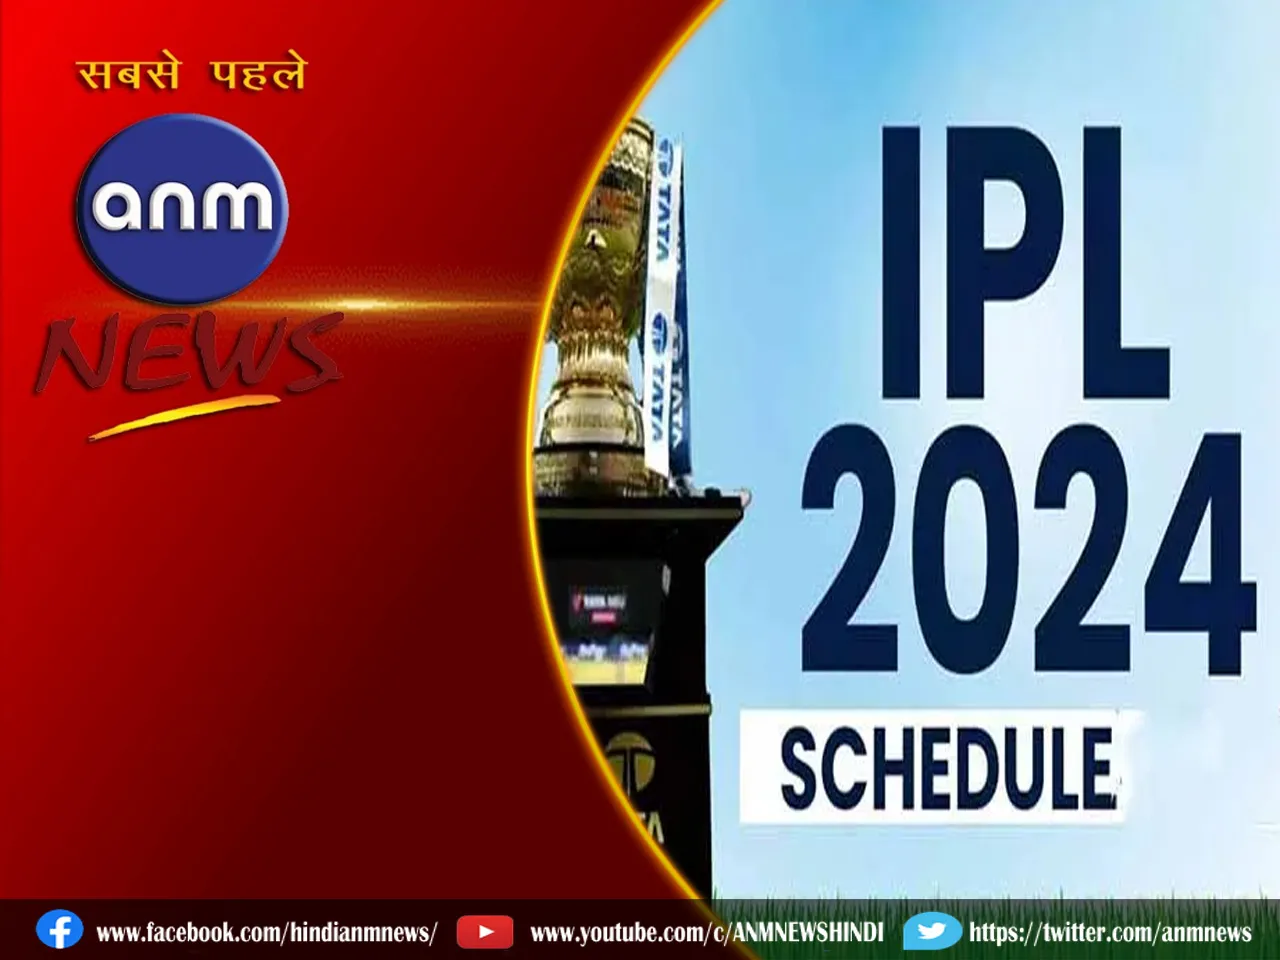 schedule of IPL.